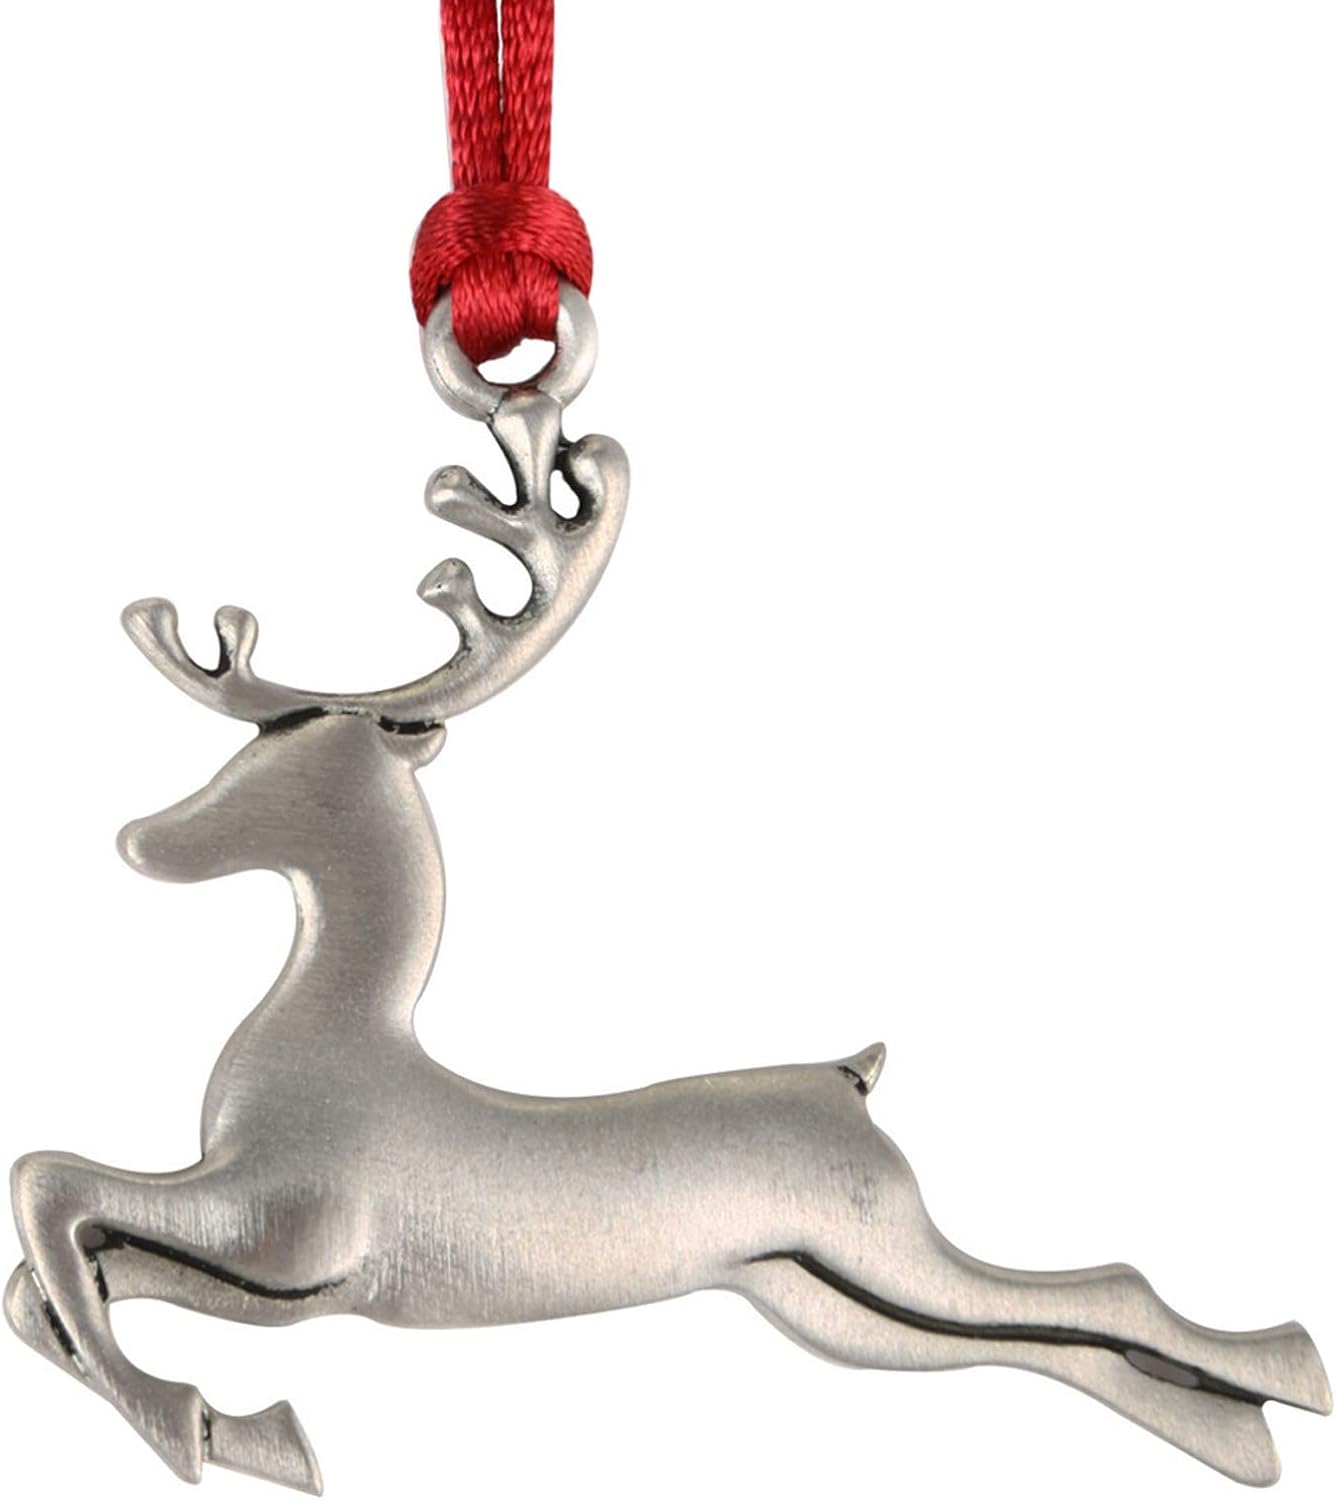 Reindeer Christmas Ornaments